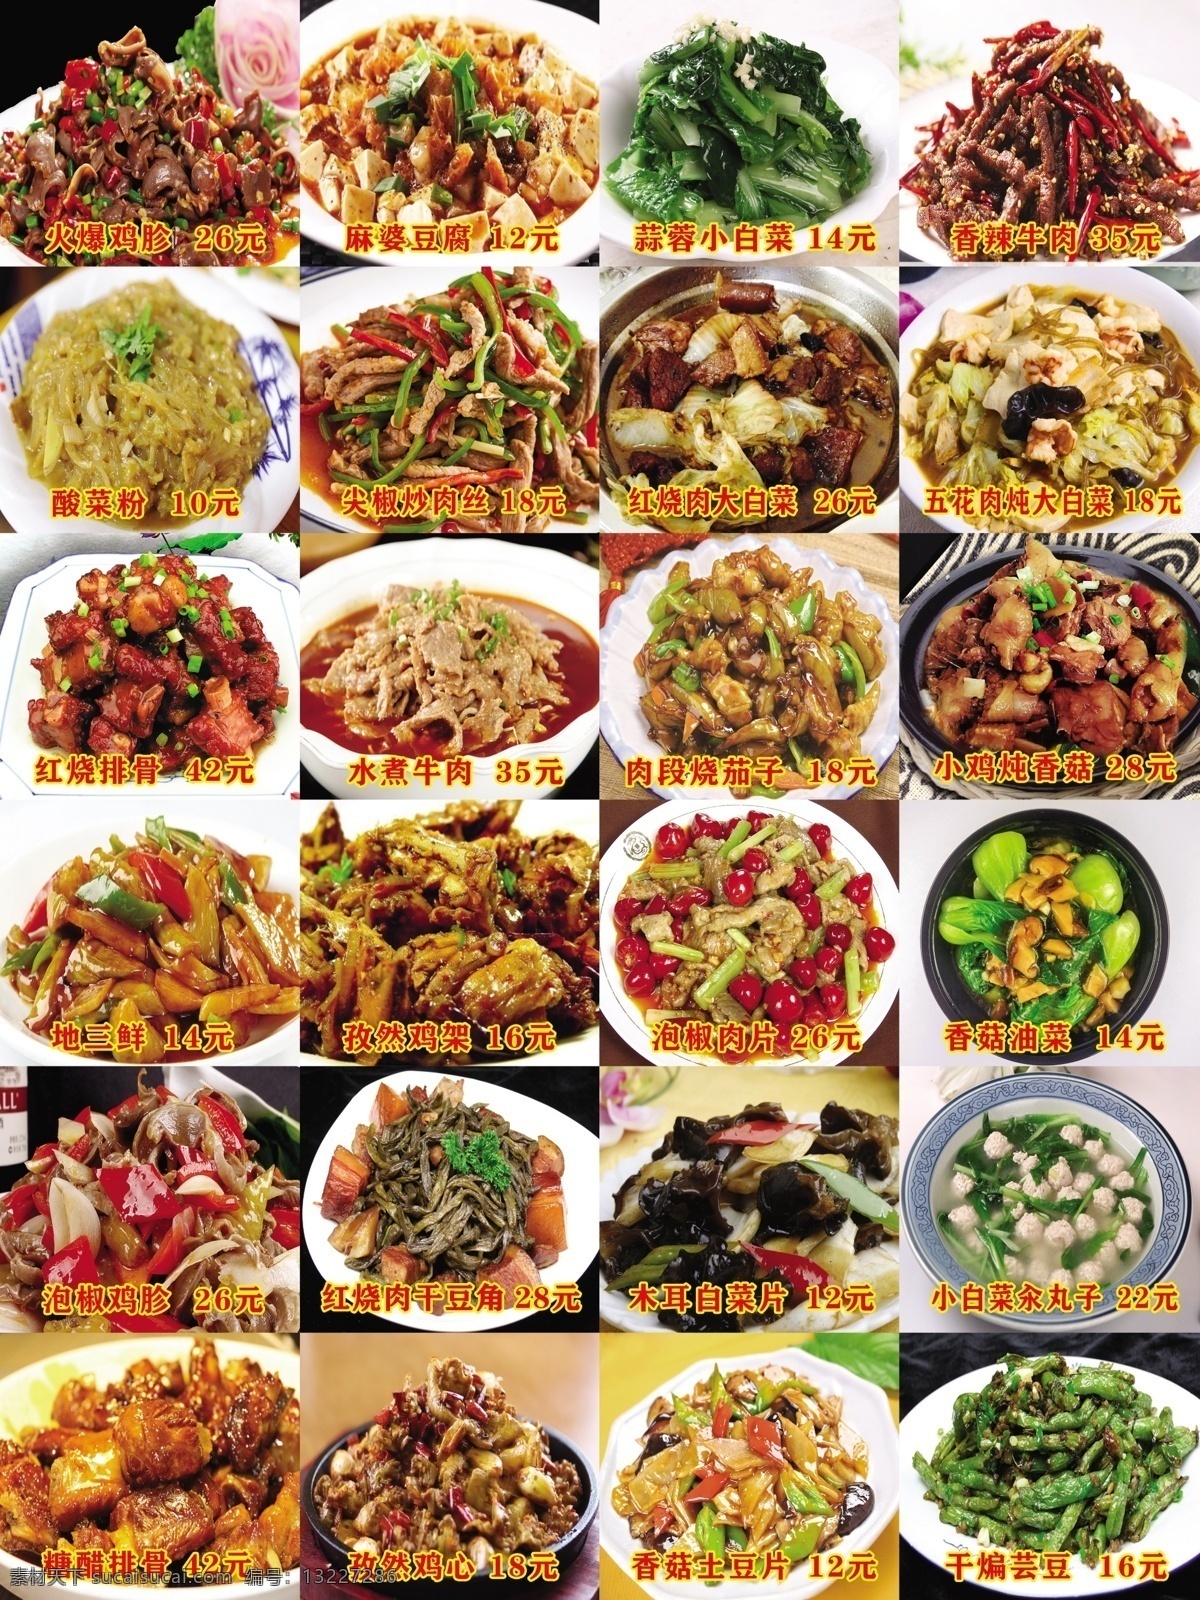 饭店菜谱图片 饭店菜谱 菜单 广告 海报 菜品 分层